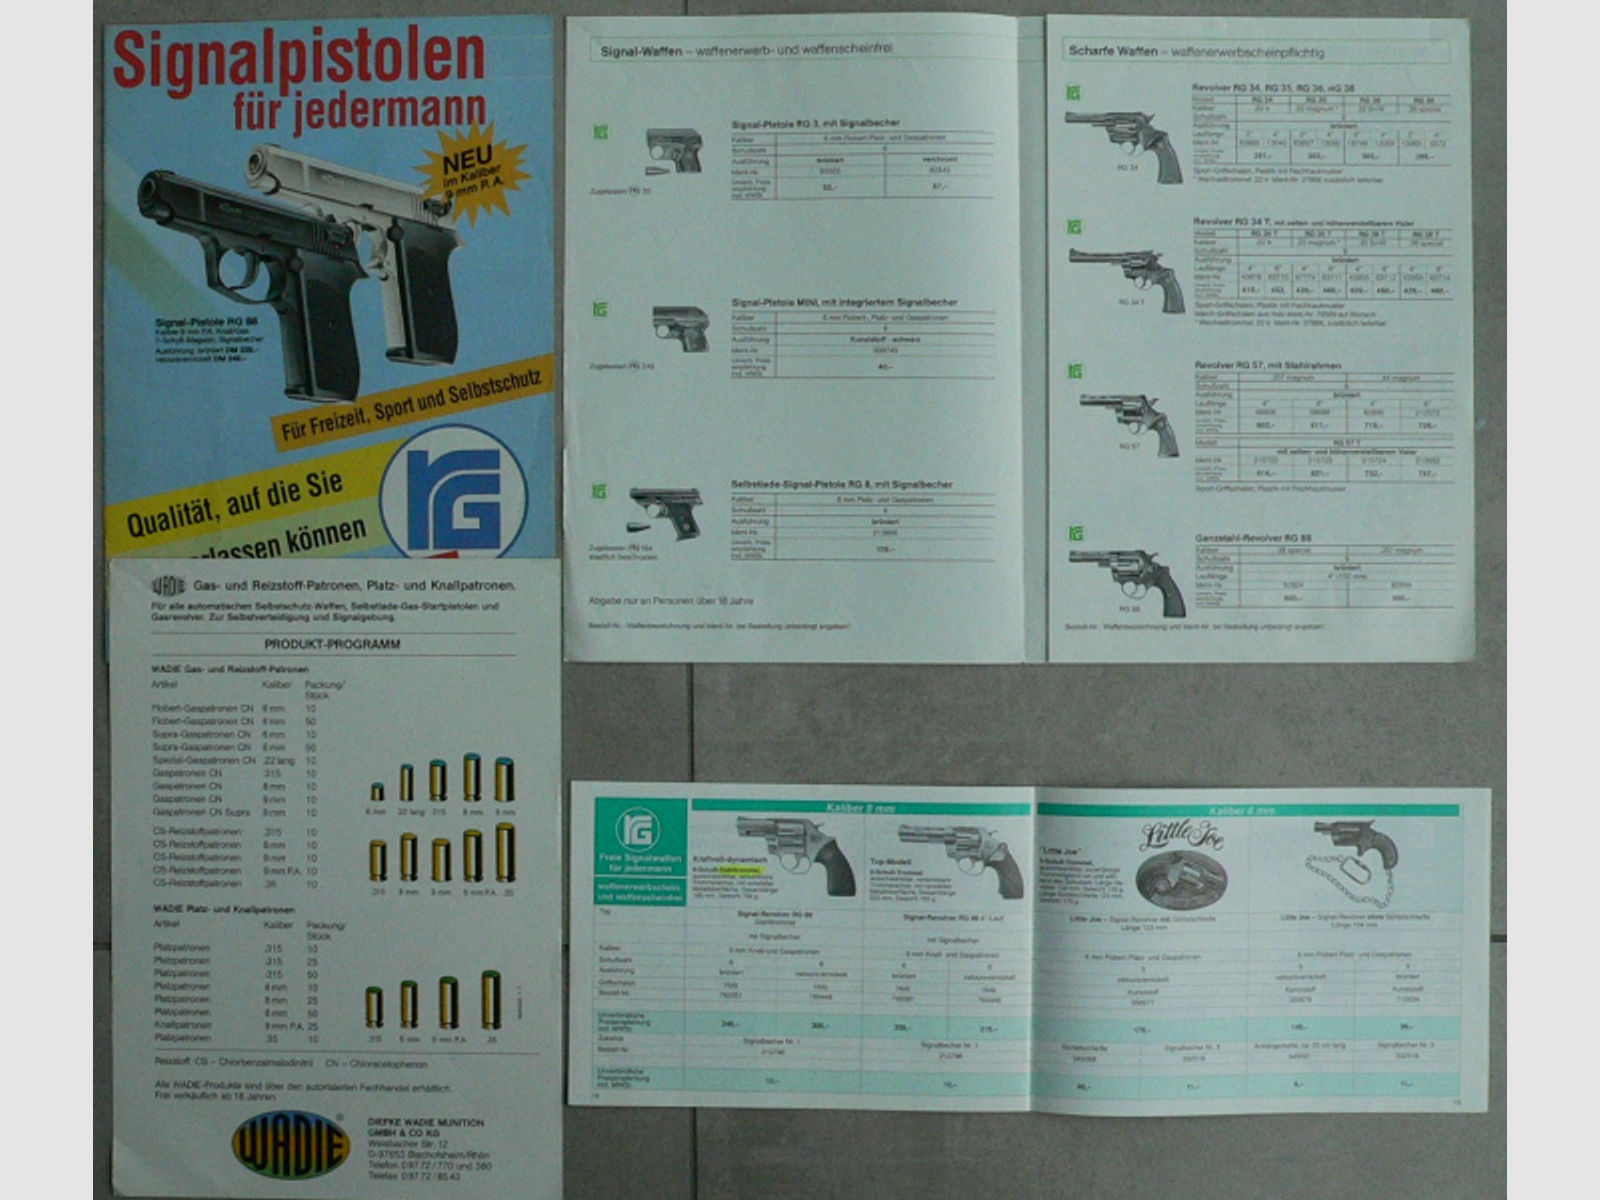 Röhm Prospekte, Signal Waffen, Pistole, Revolver, Ersatzteile, Preisliste, Konvolut.